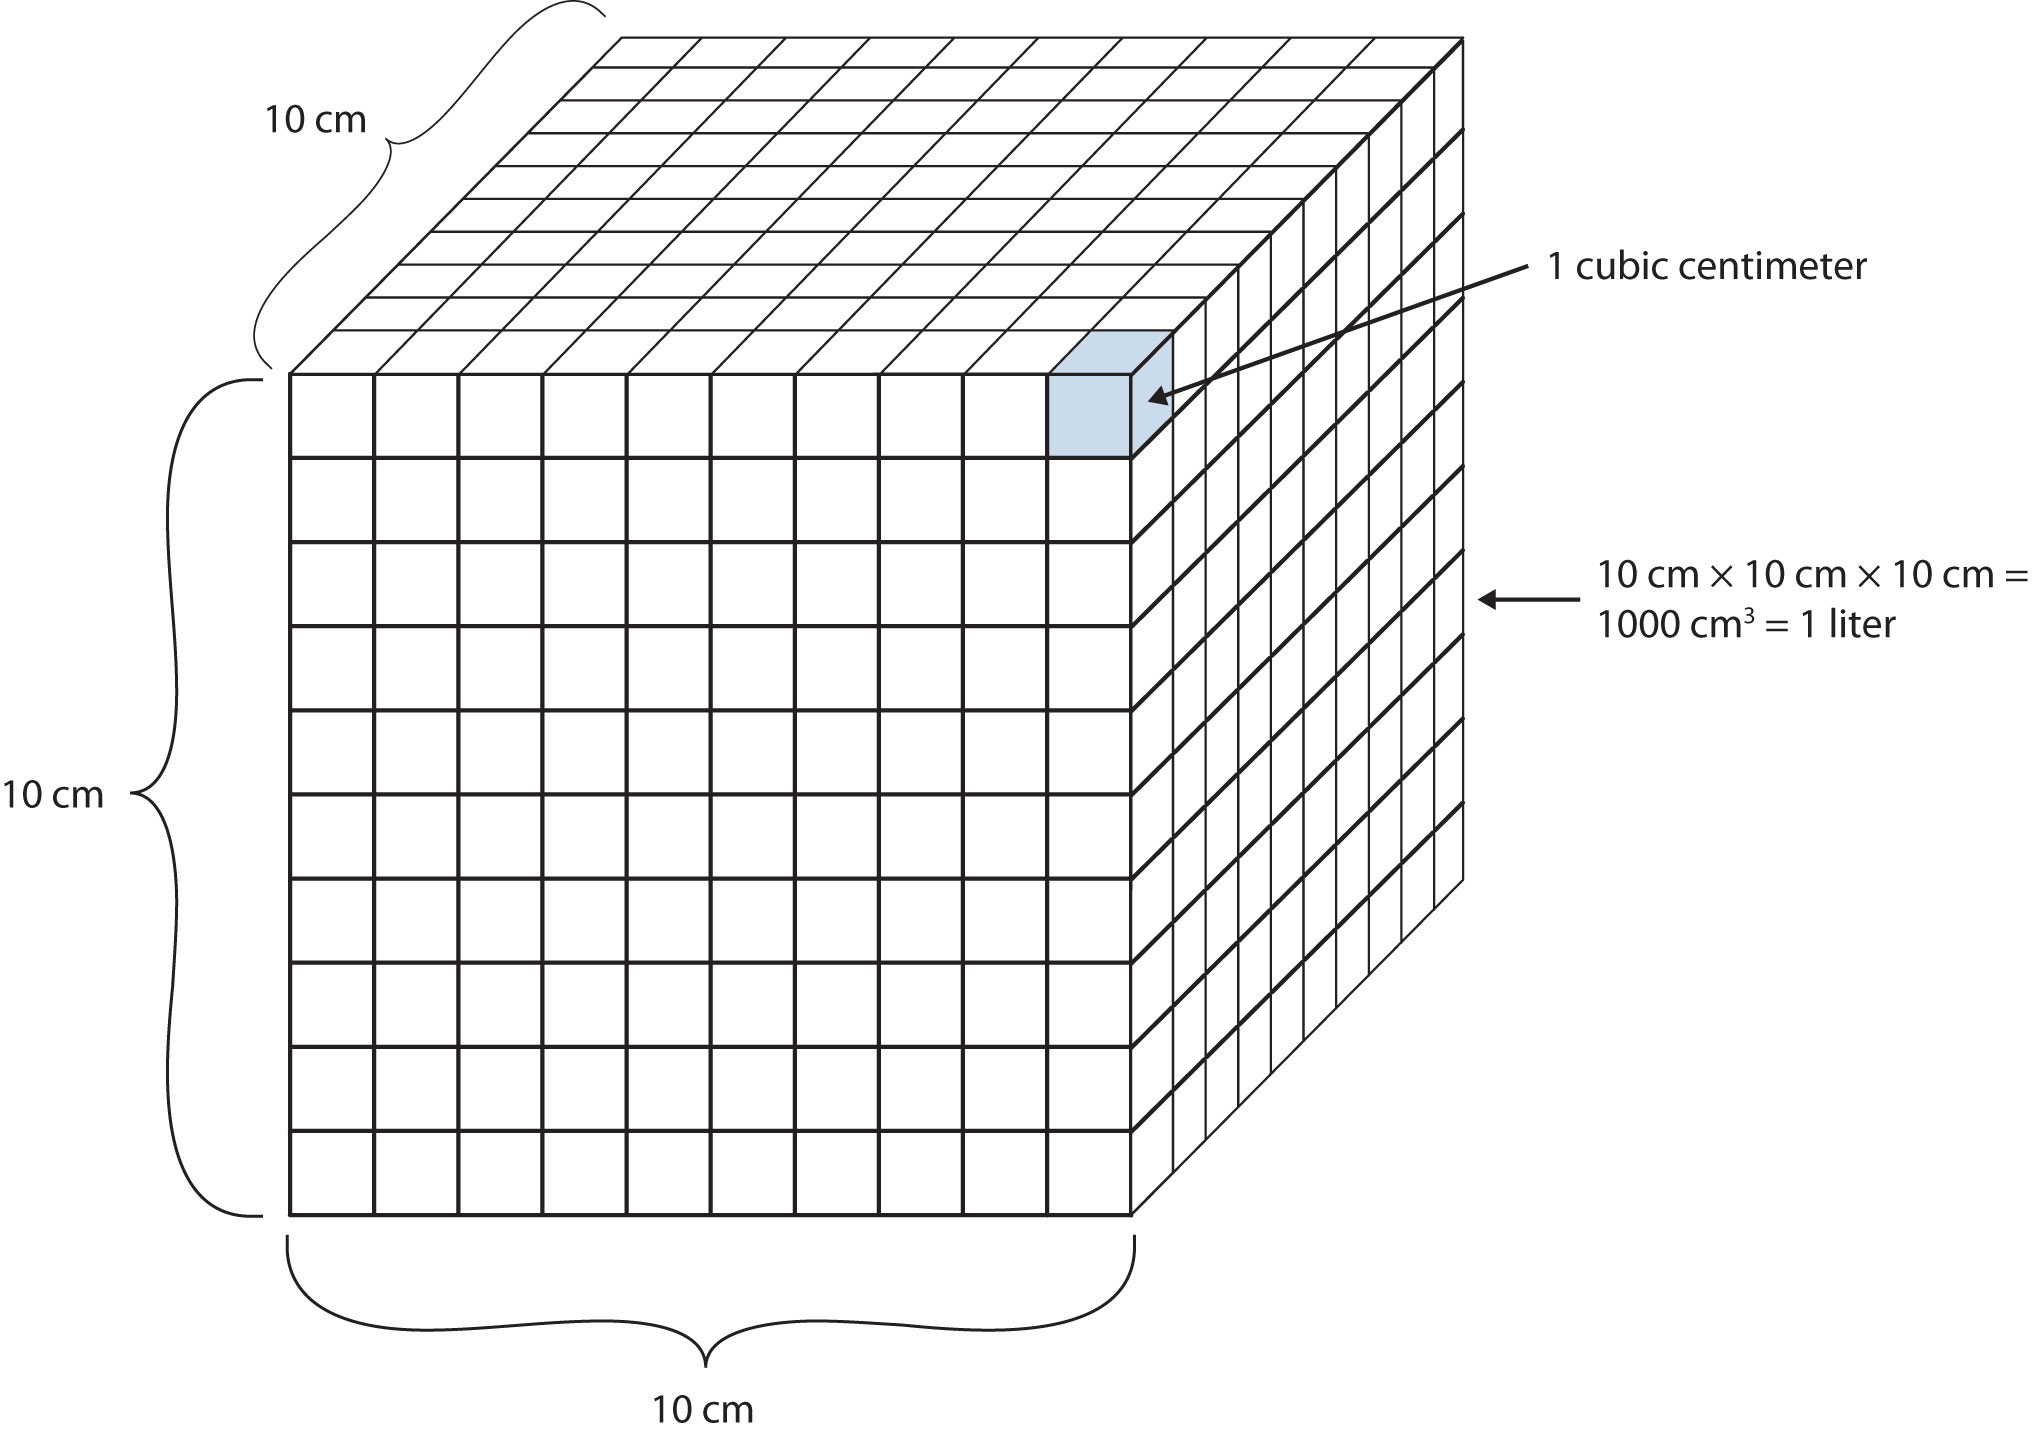 Se muestra un litro representado por un cubo de 10 x 10 x 10 cm.